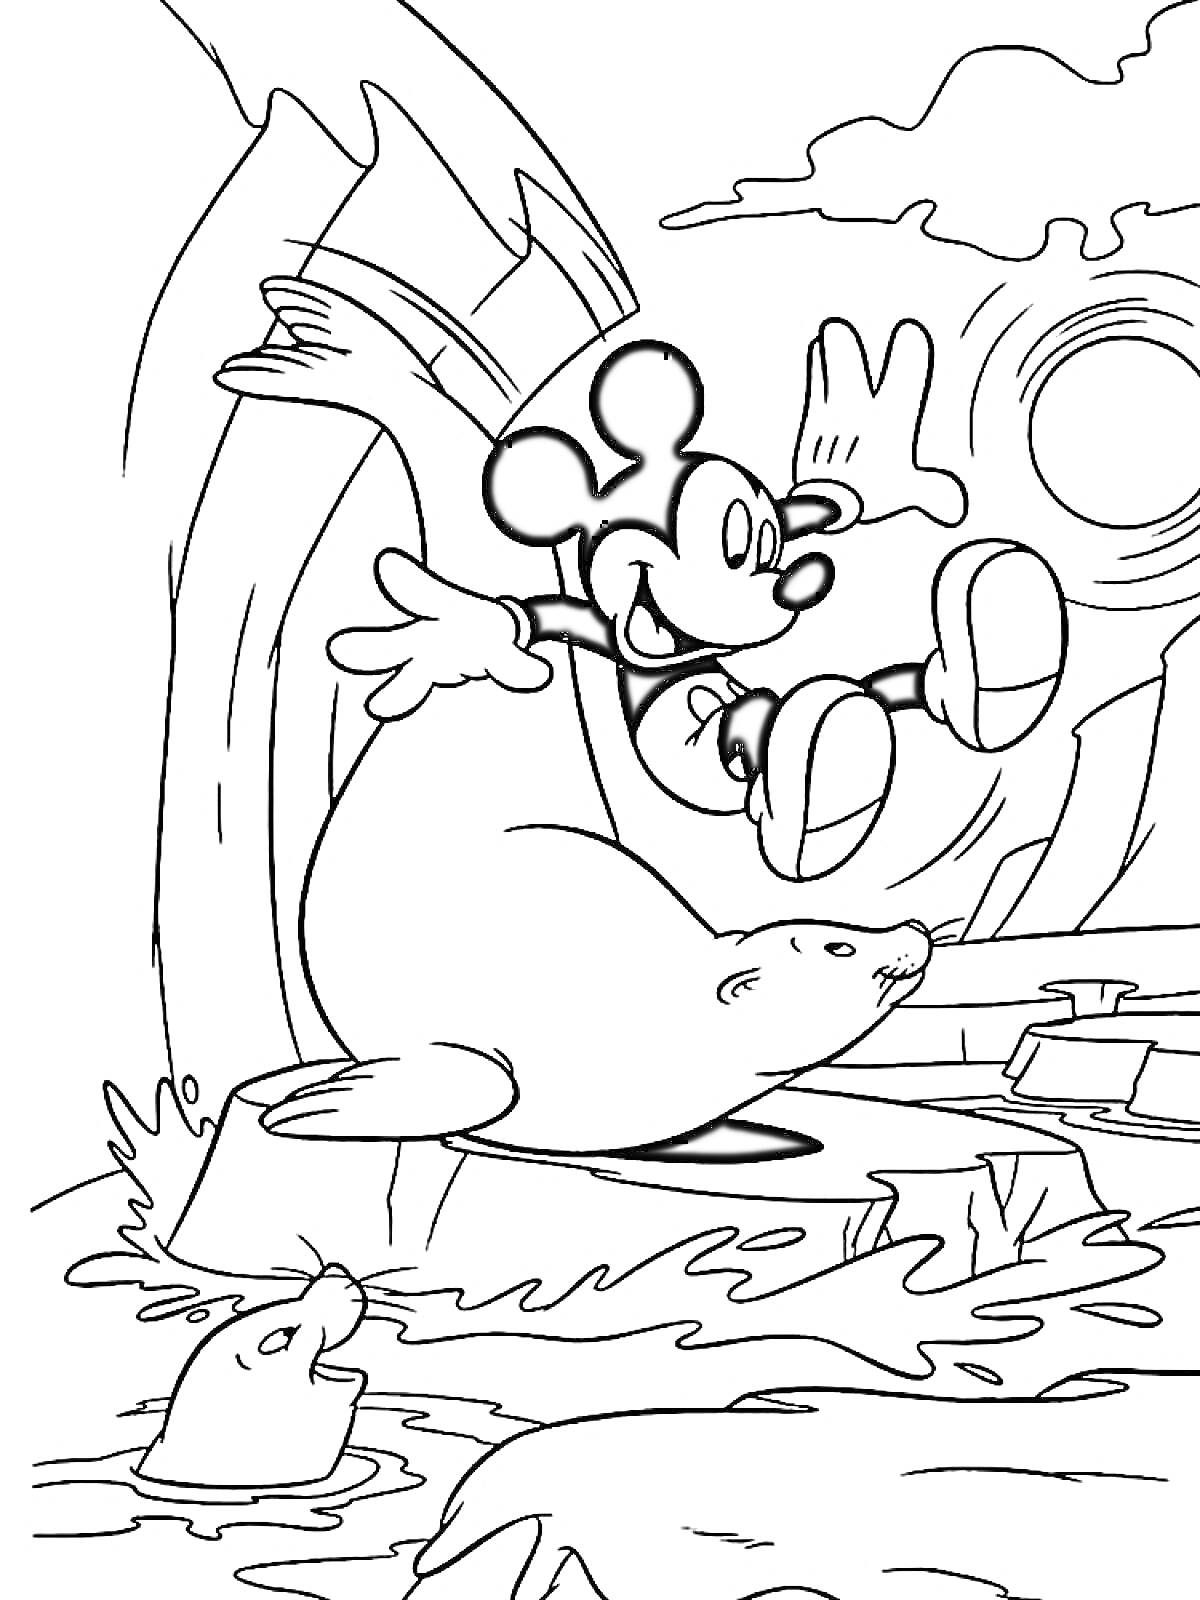 Раскраска Микки Маус прыгает рядом с тюленем на льдине, сцена у воды, солнечная погода